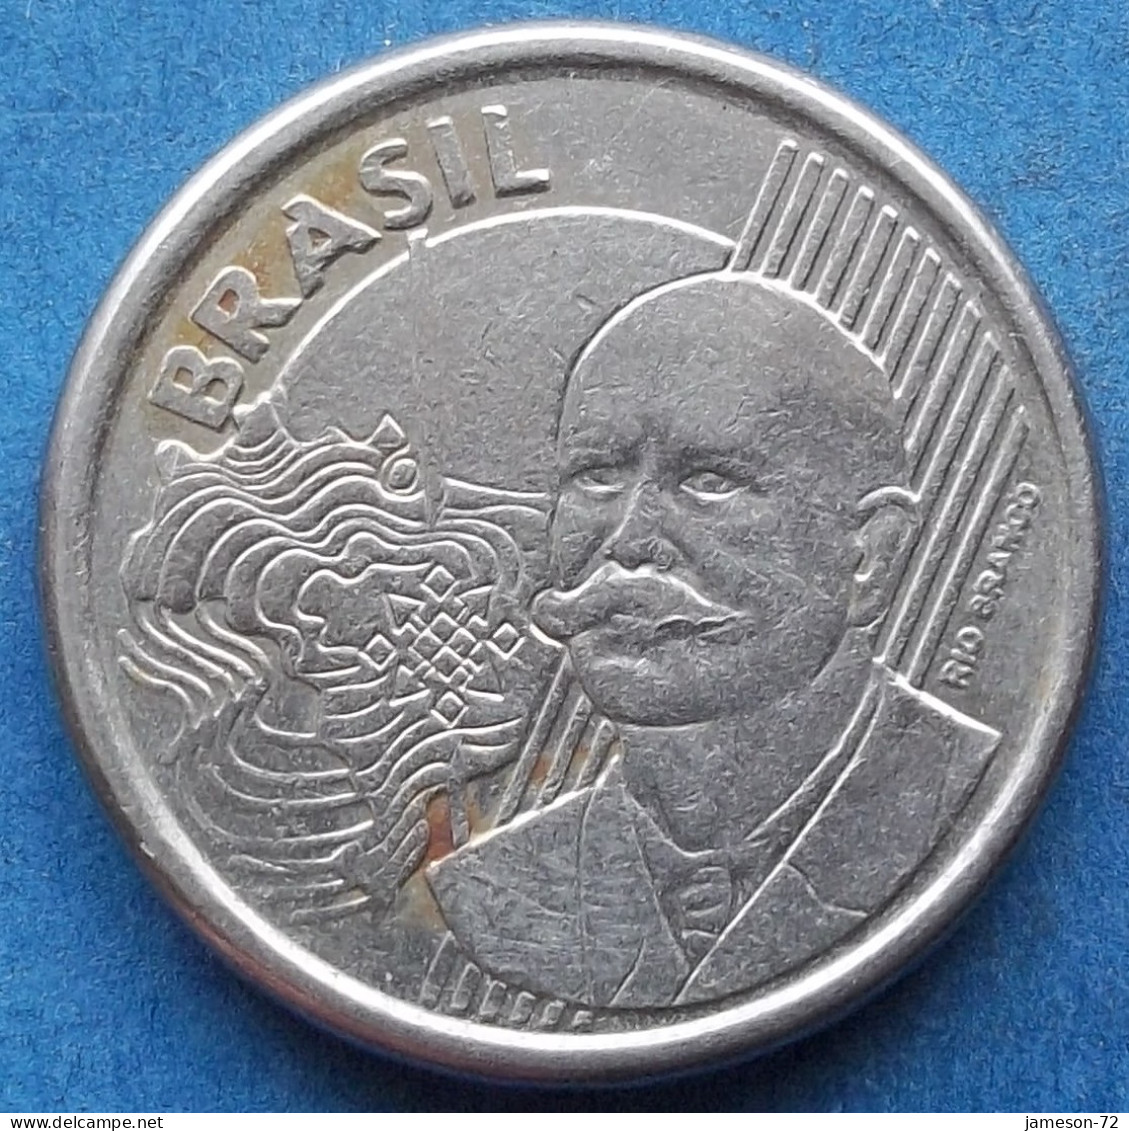 BRAZIL - 50 Centavos 2011 "Baron Of Rio Branco" KM# 651a Monetary Reform (1994) - Edelweiss Coins - Brazil